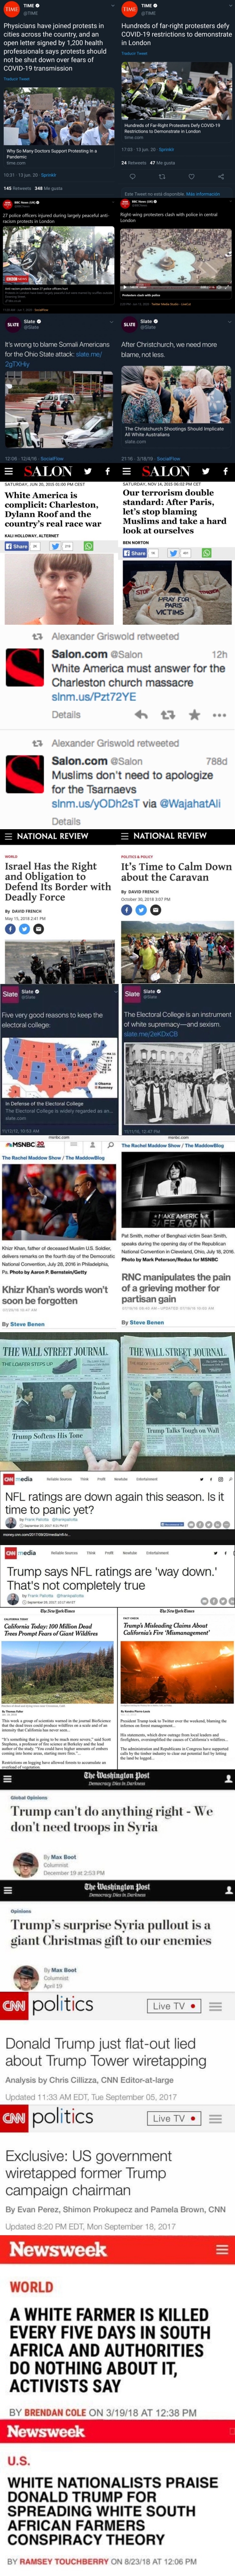 hypocrisy of the mainstream media